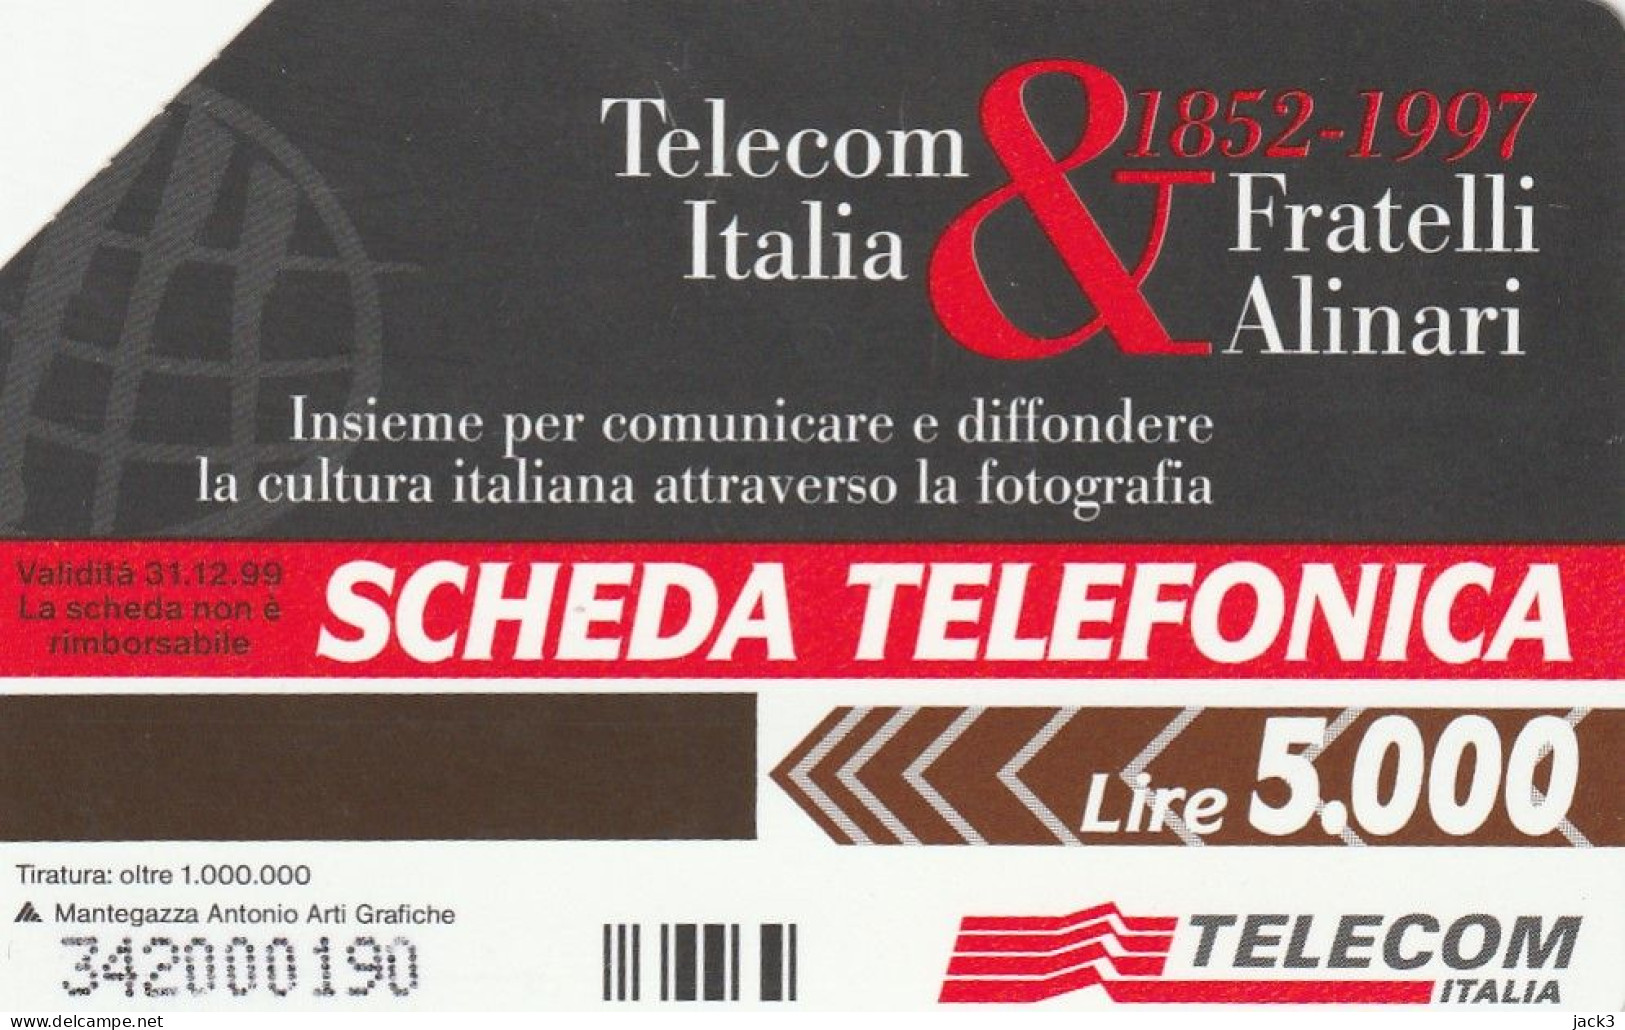 SCEDA TELEFONICA - FRATELLI ALINARI (2 SCANS) - Public Themes